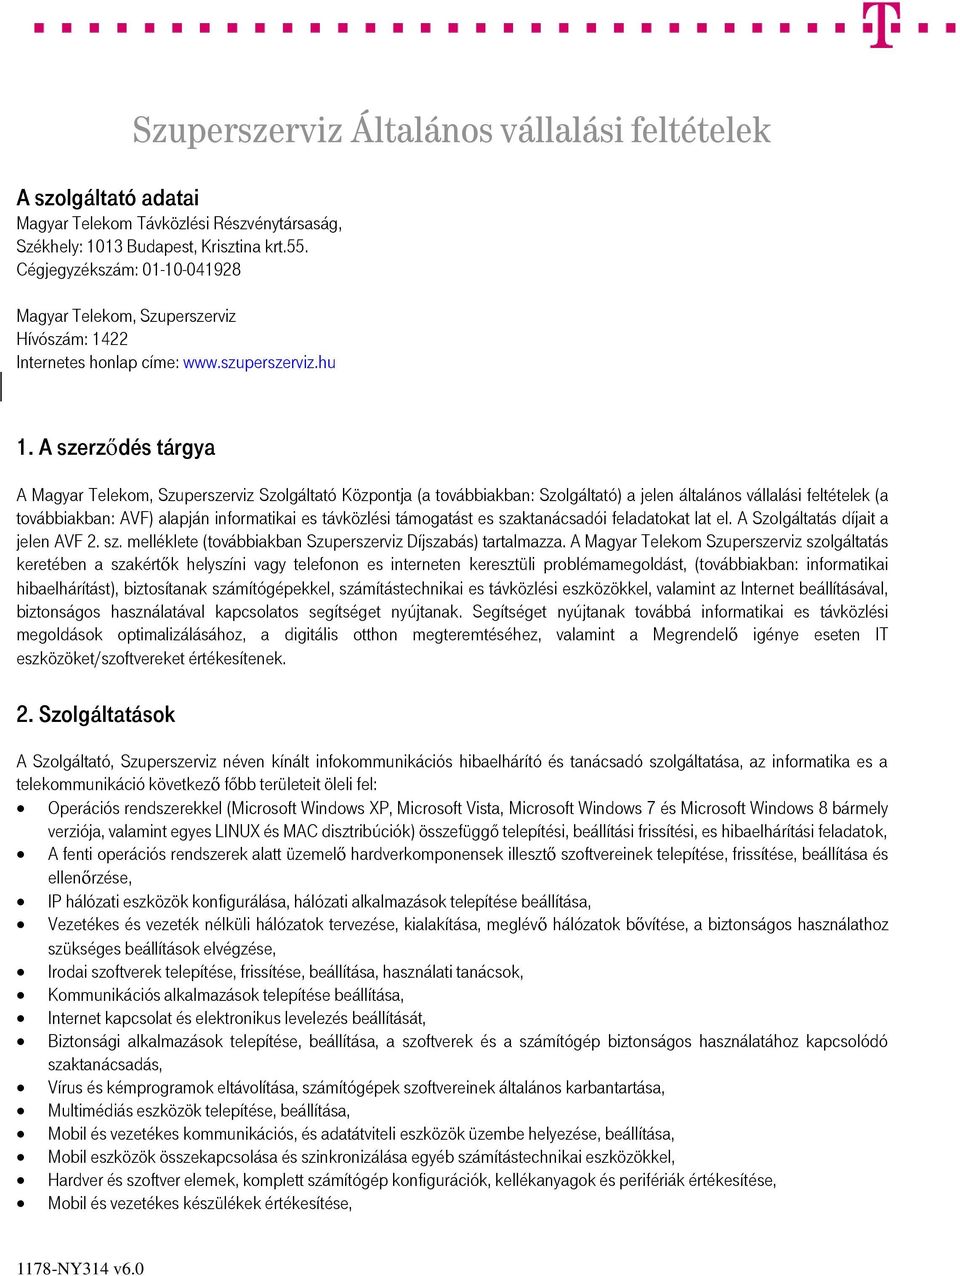 A szerződés tárgya A Magyar Telekom, Szuperszerviz Szolgáltató Központja (a továbbiakban: Szolgáltató) a jelen általános vállalási feltételek (a továbbiakban: AVF) alapján informatikai es távközlési